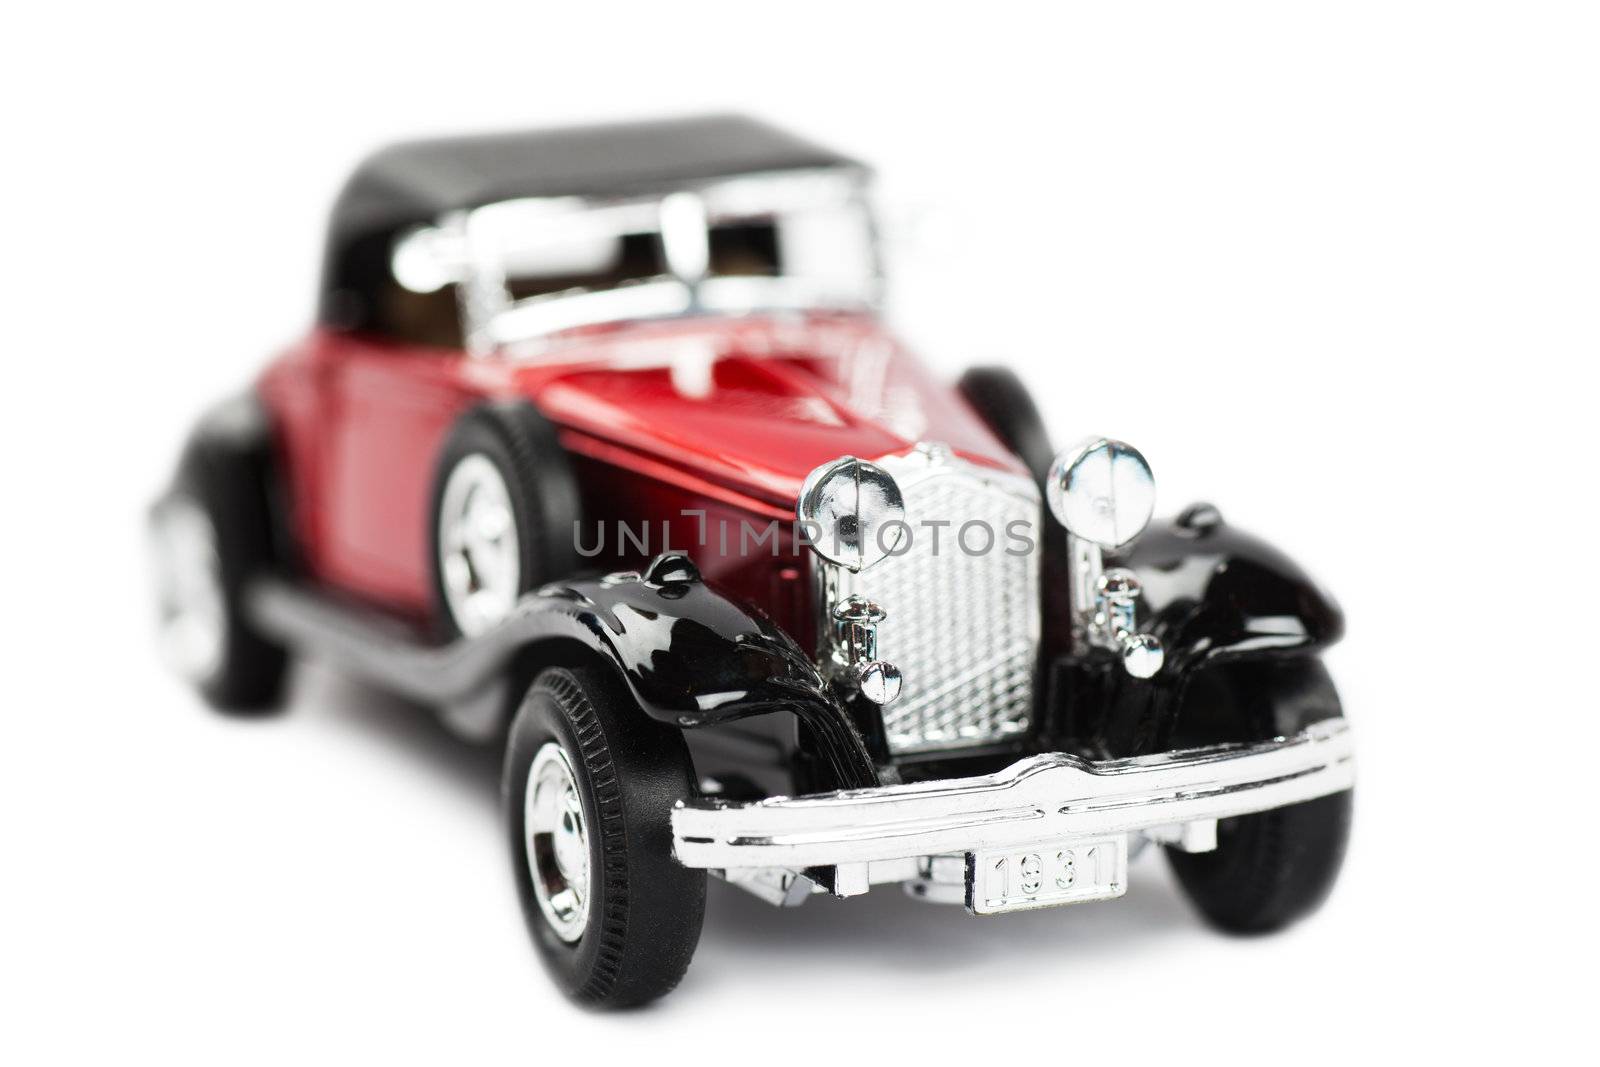 Toy car by AGorohov